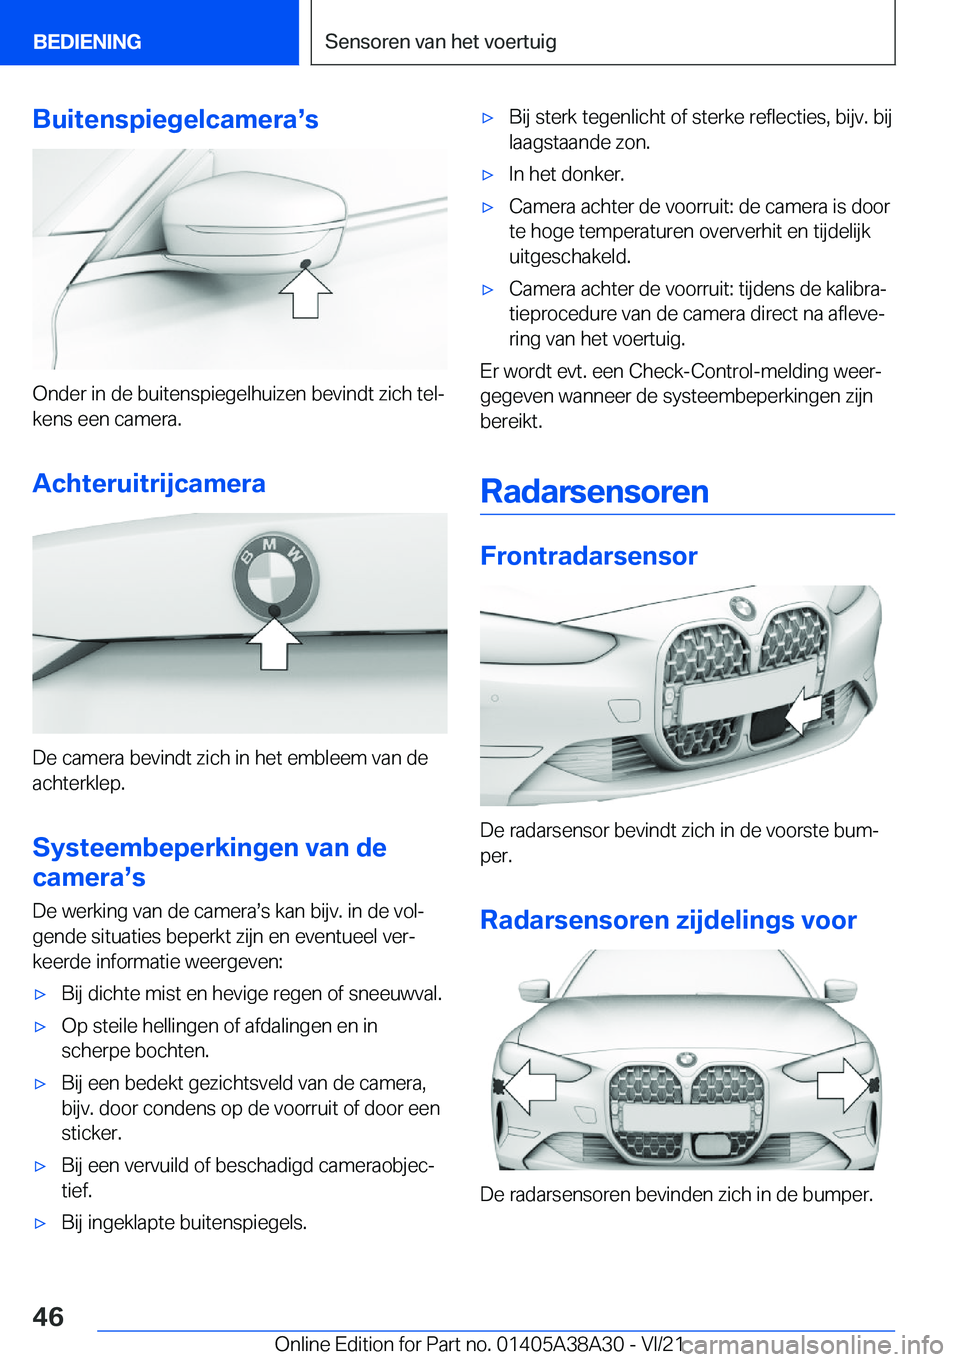 BMW 4 SERIES GRAN COUPE 2022  Instructieboekjes (in Dutch) �B�u�i�t�e�n�s�p�i�e�g�e�l�c�a�m�e�r�as�s
�O�n�d�e�r��i�n��d�e��b�u�i�t�e�n�s�p�i�e�g�e�l�h�u�i�z�e�n��b�e�v�i�n�d�t��z�i�c�h��t�e�lj
�k�e�n�s��e�e�n��c�a�m�e�r�a�.
�A�c�h�t�e�r�u�i�t�r�i�j�